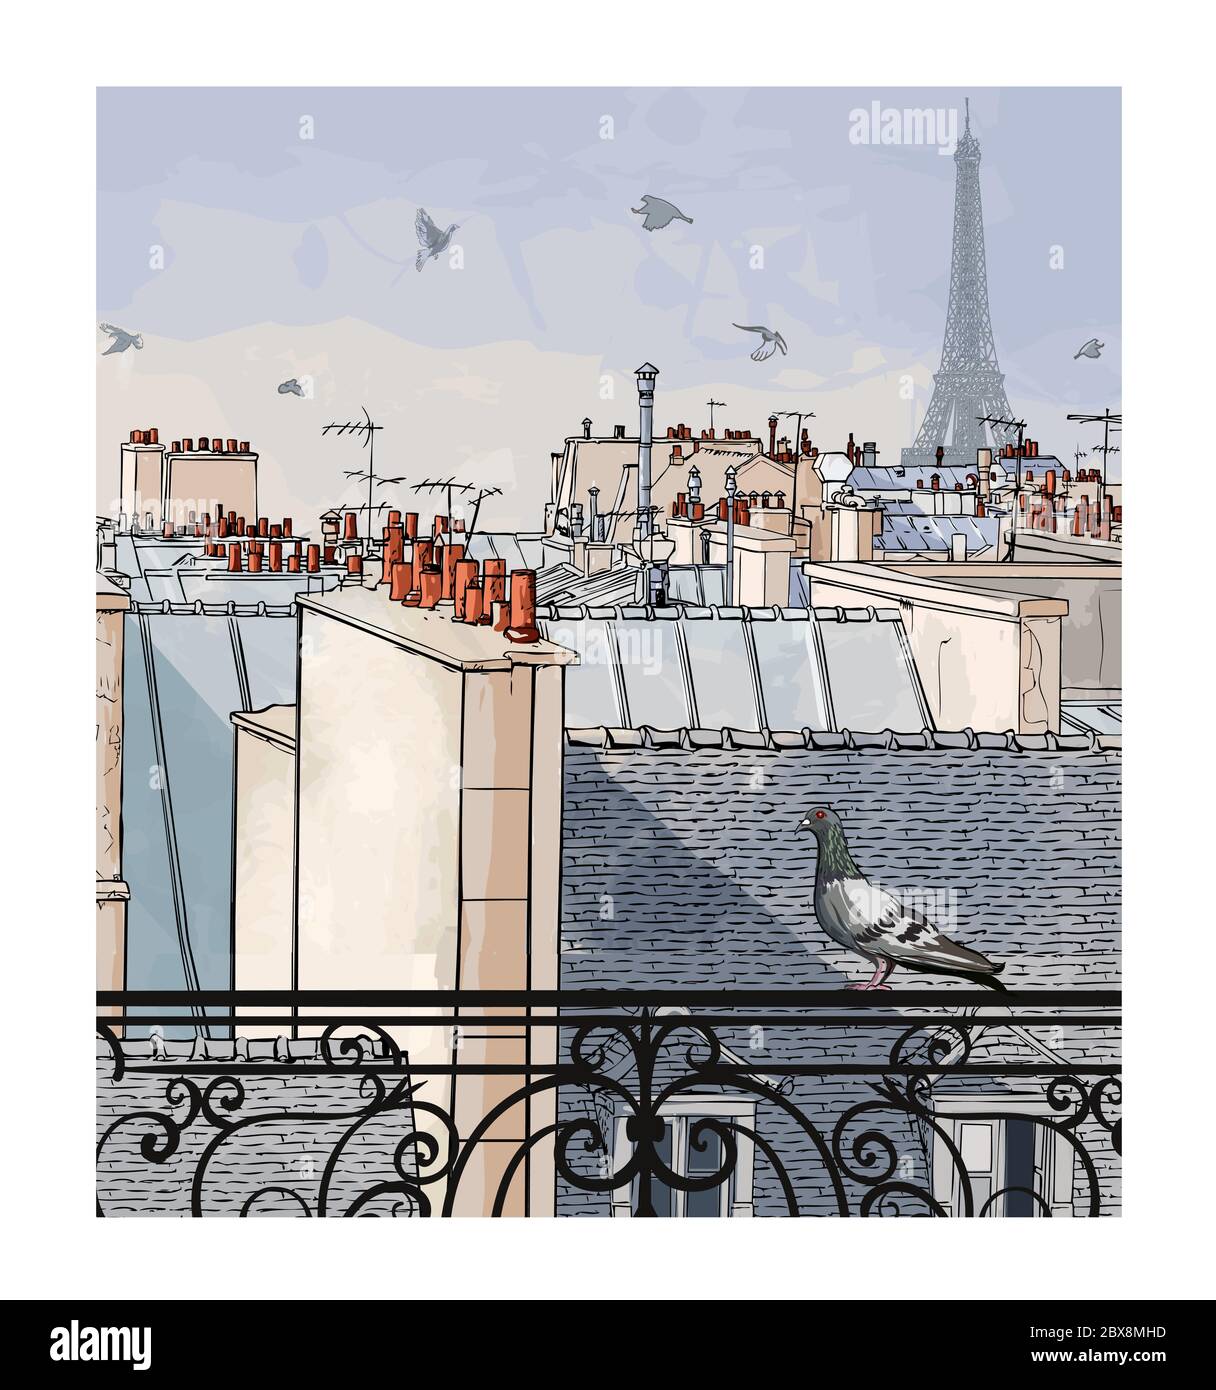 Luftbild-Panorama-Stadtansicht von Paris, Frankreich mit Eiffelturm - Vektorgrafik (ideal für den Druck auf Stoff oder Papier, Poster oder Wallpap Stock Vektor